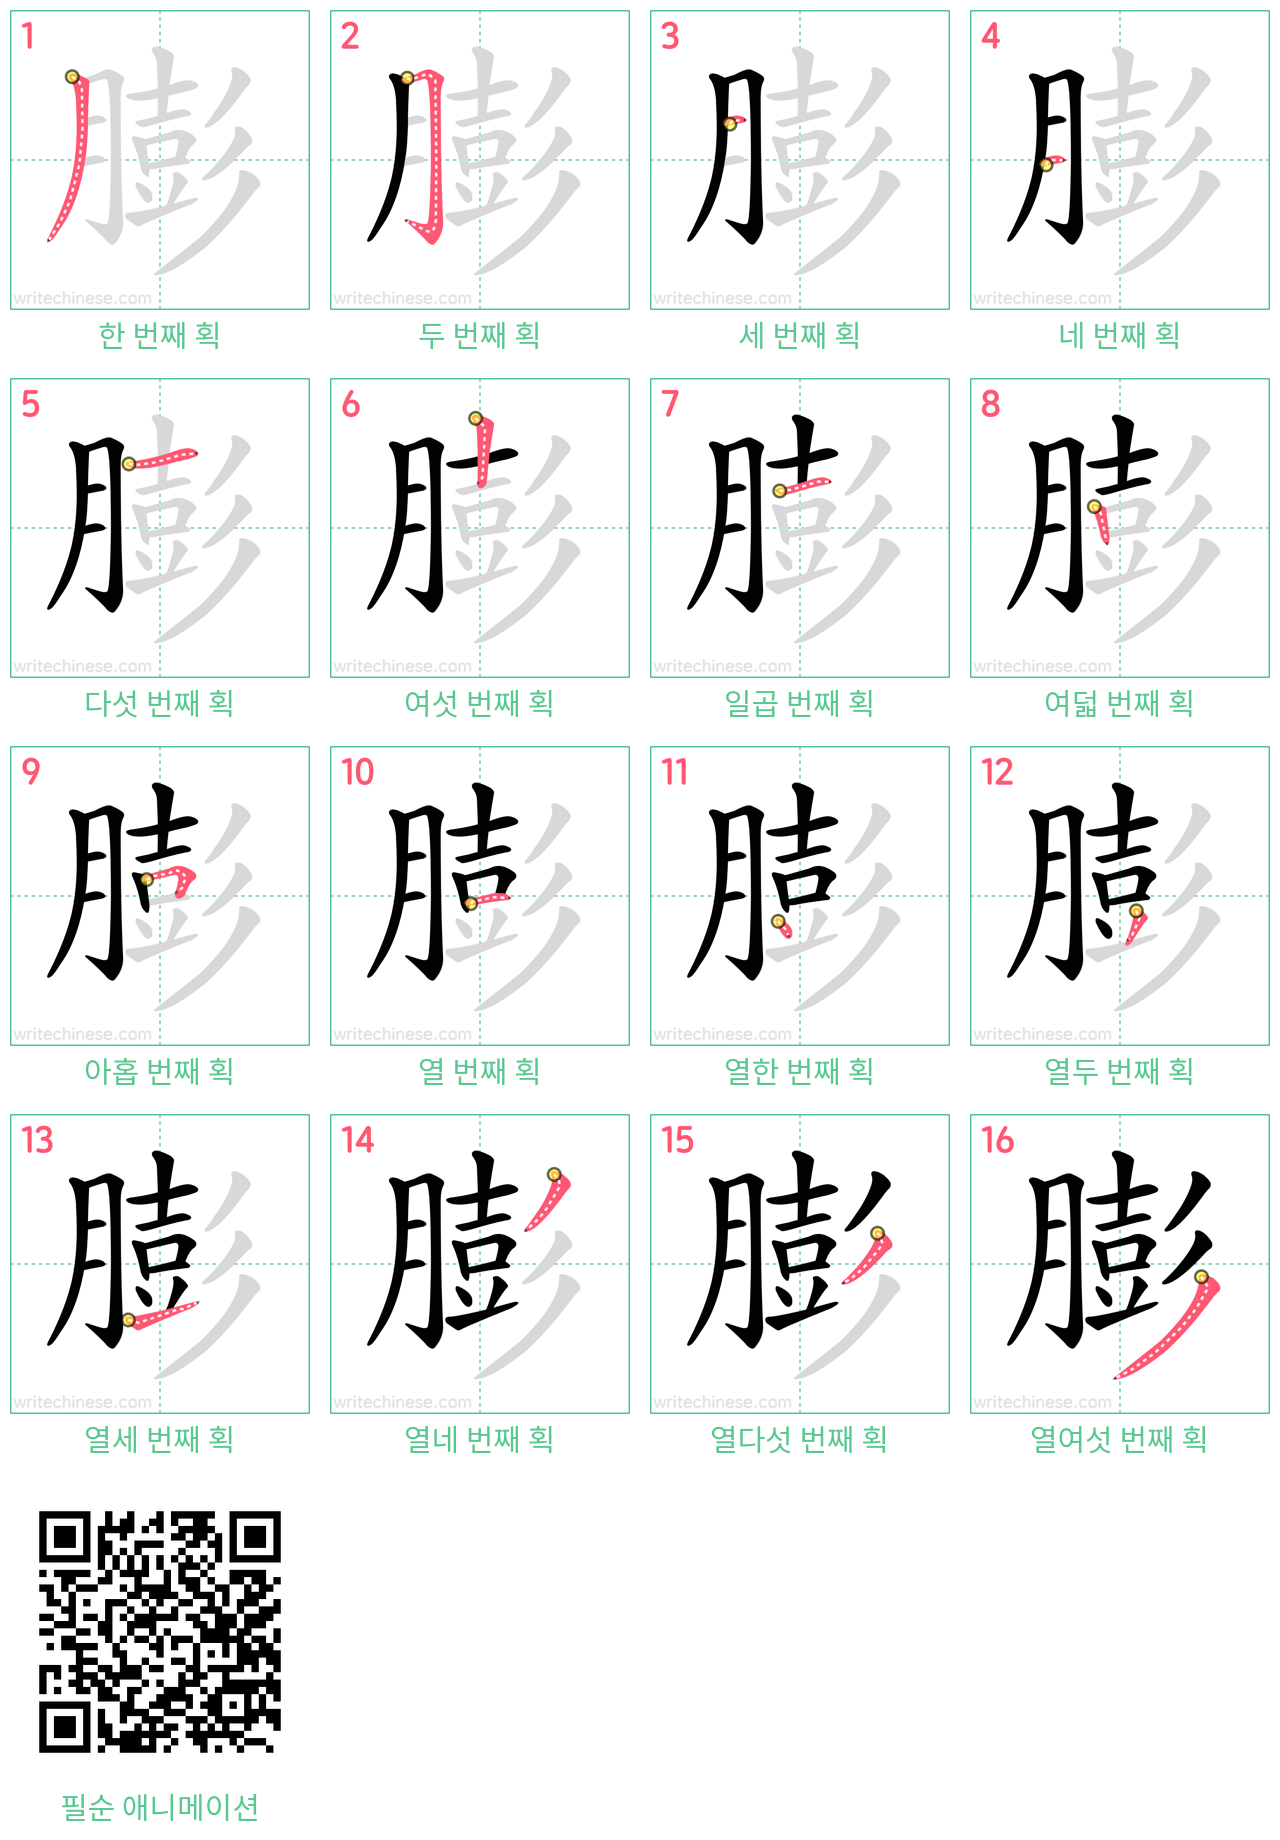 膨 step-by-step stroke order diagrams